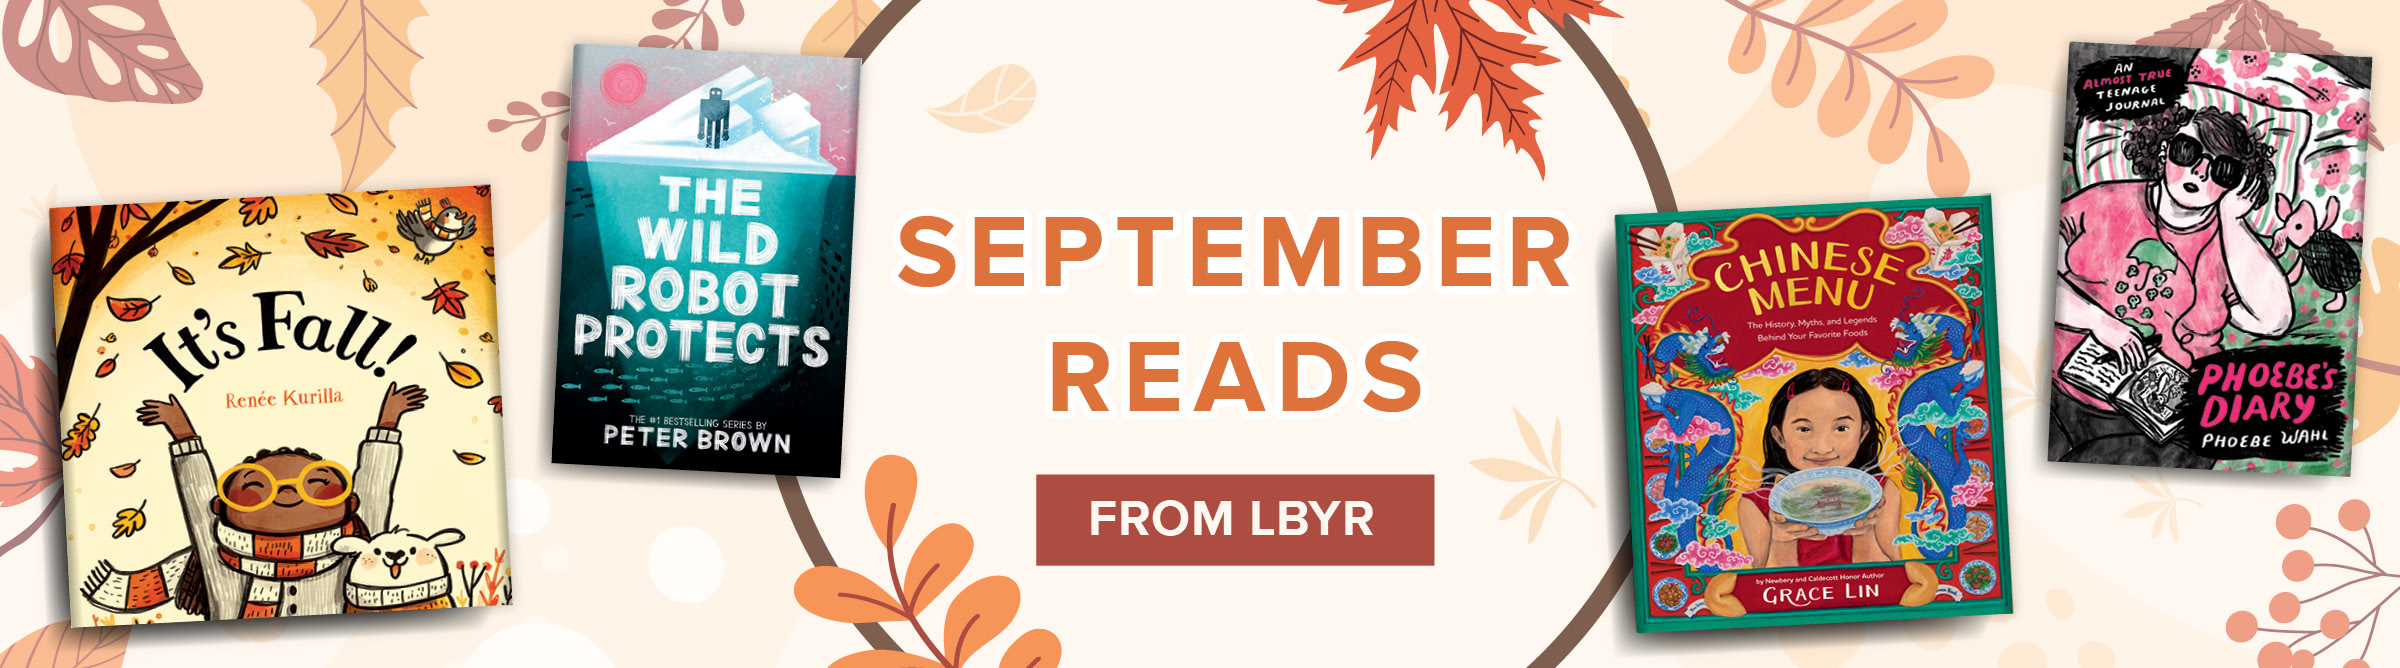 LBYR - September Banner